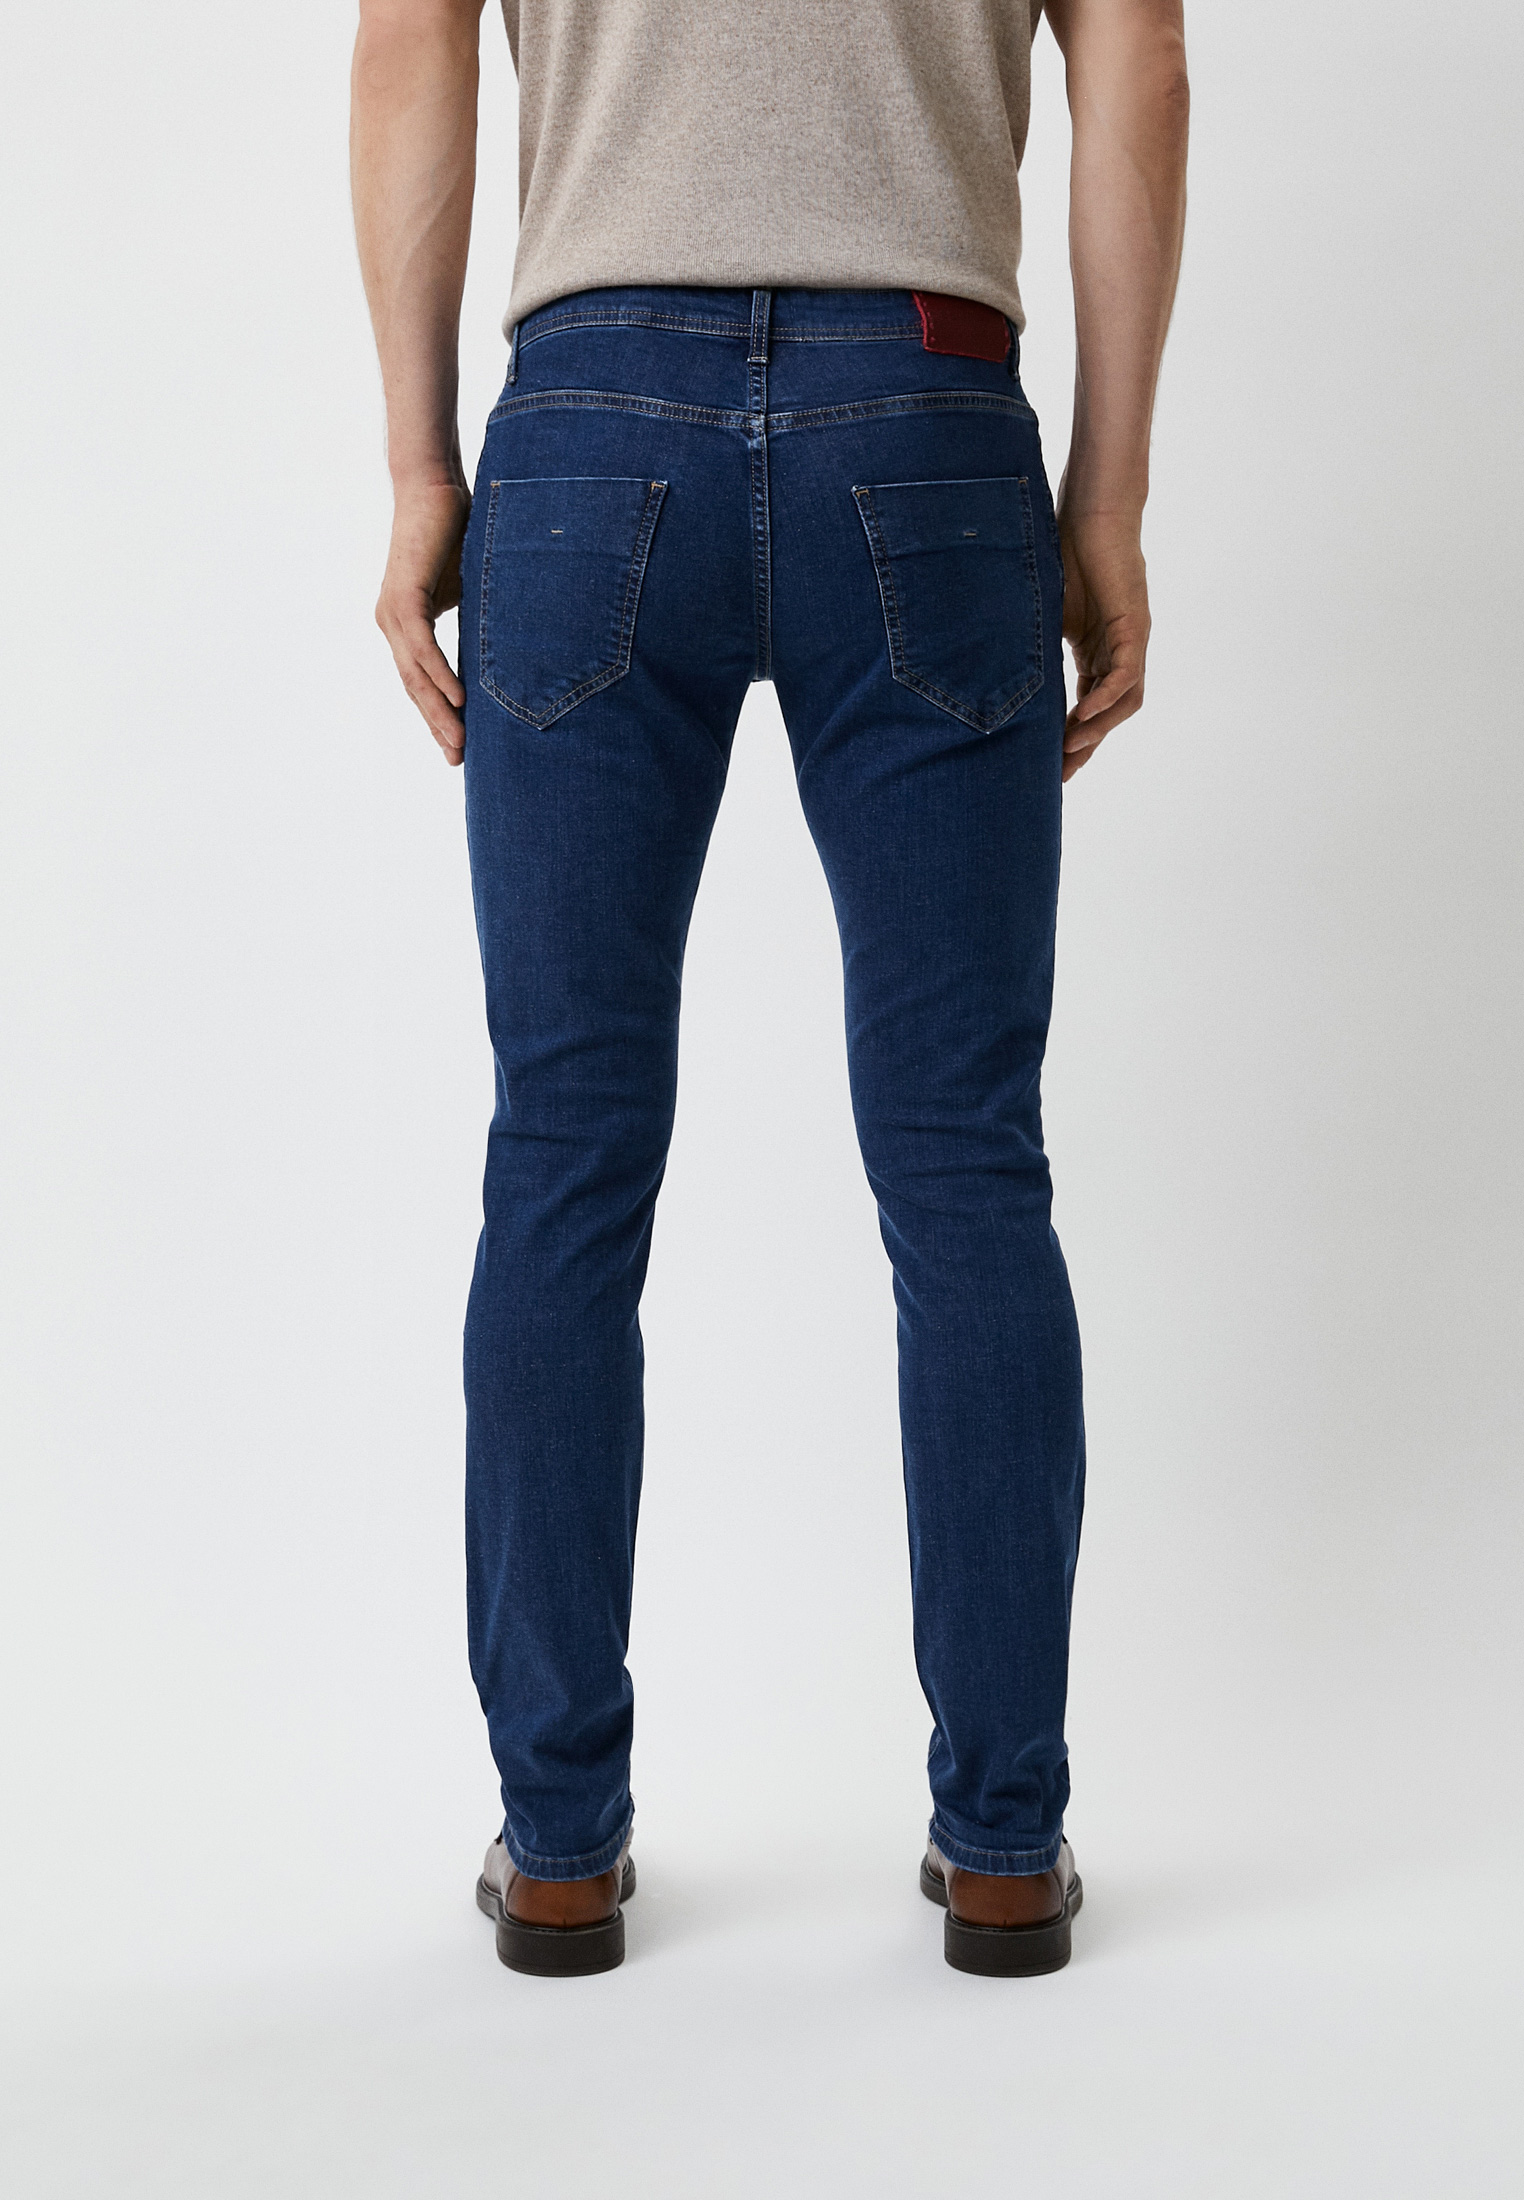 Мужские зауженные джинсы Baldinini (Балдинини) MJ103: изображение 3